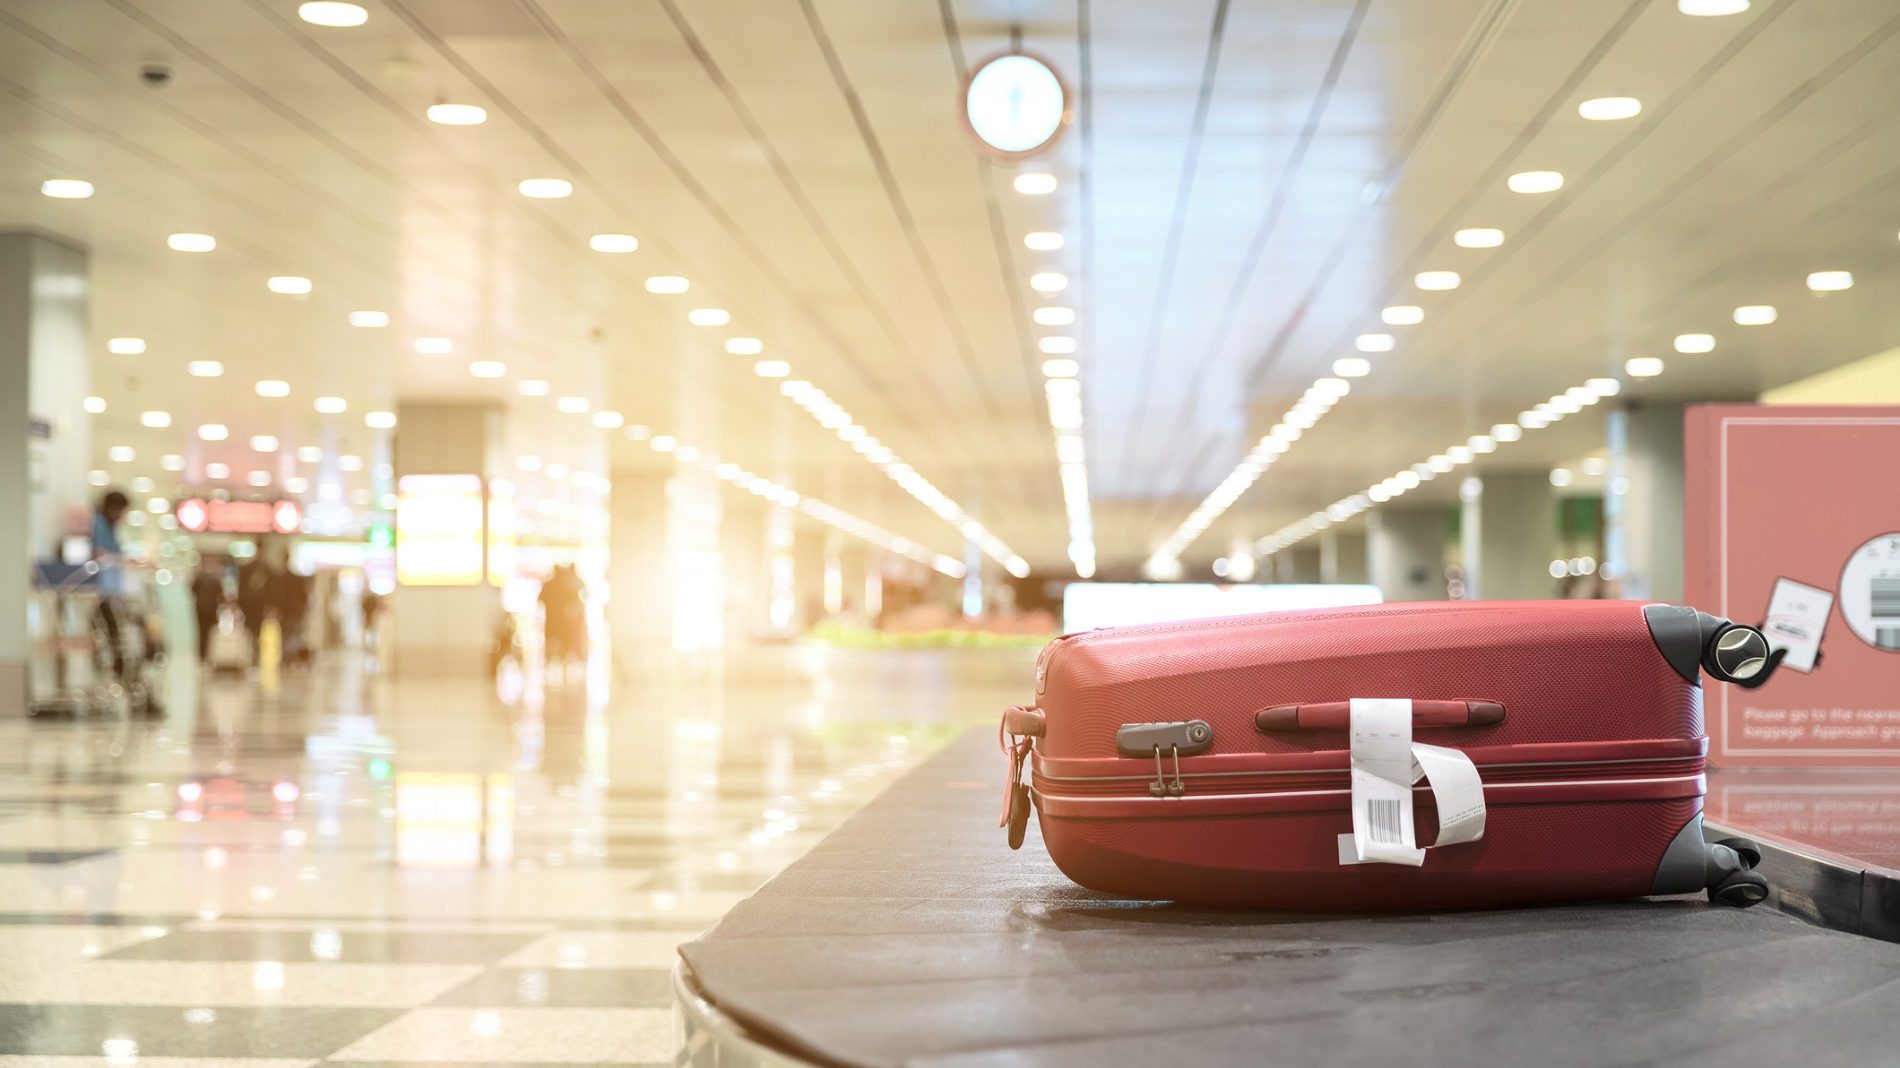 Sofocar Ilustrar insuficiente Qué hacer si te han perdido las maletas en el aeropuerto - Cadena Dial